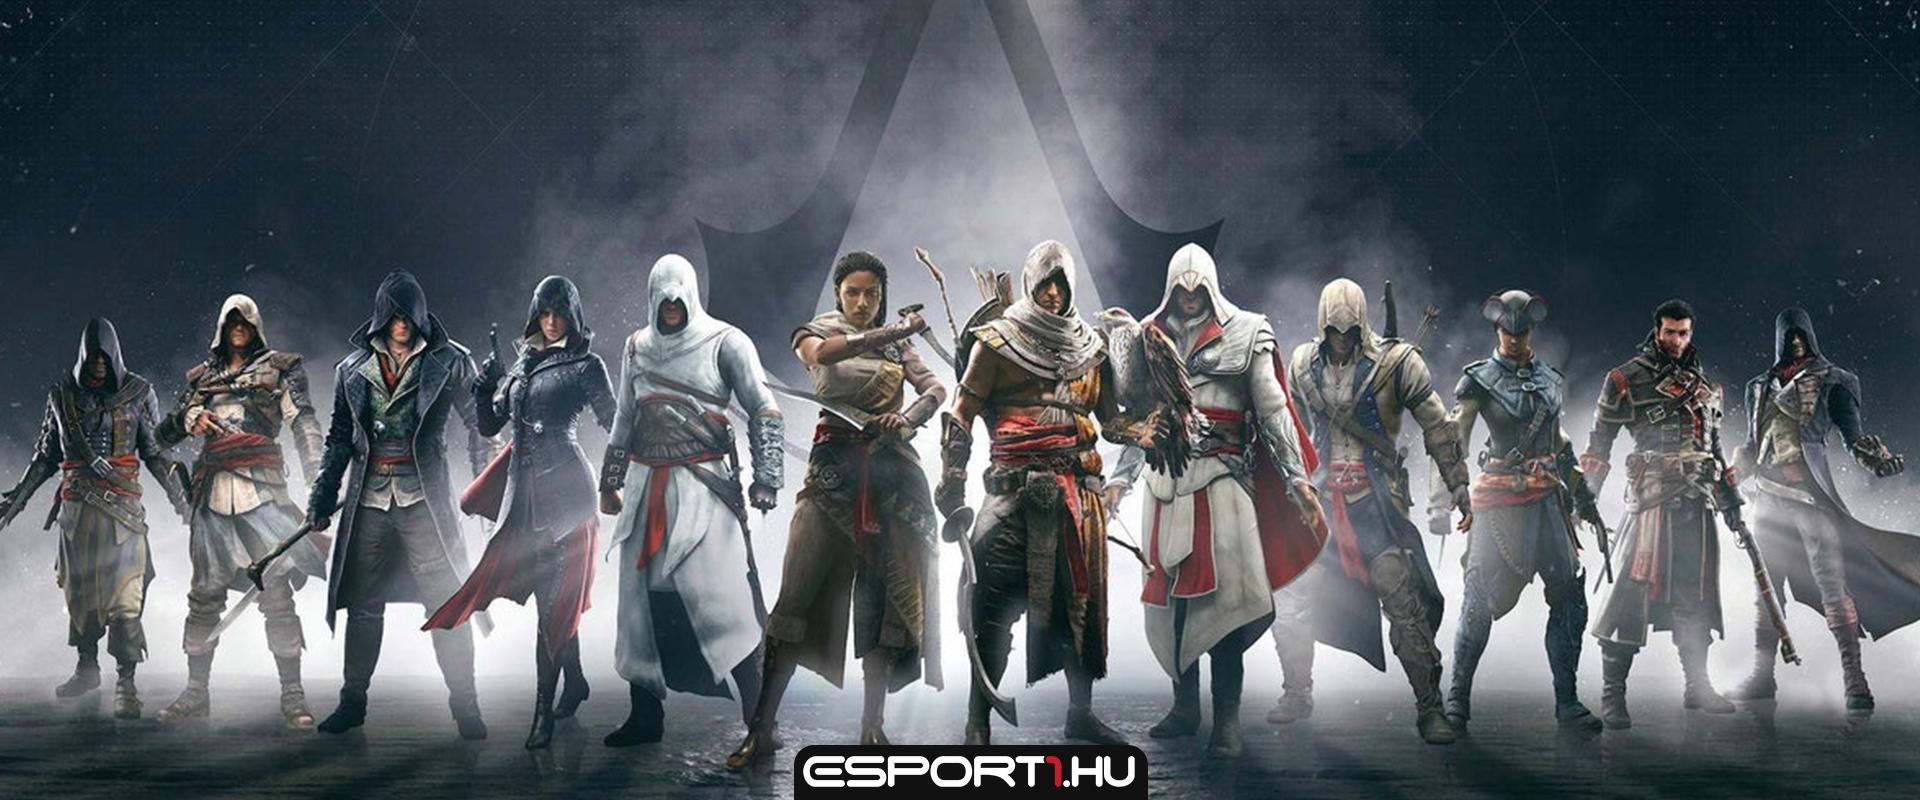 Assassin's Creed Infinity: Még hosszú időt kell várnunk a megjelenésig - egy helyen minden nyilvános információ